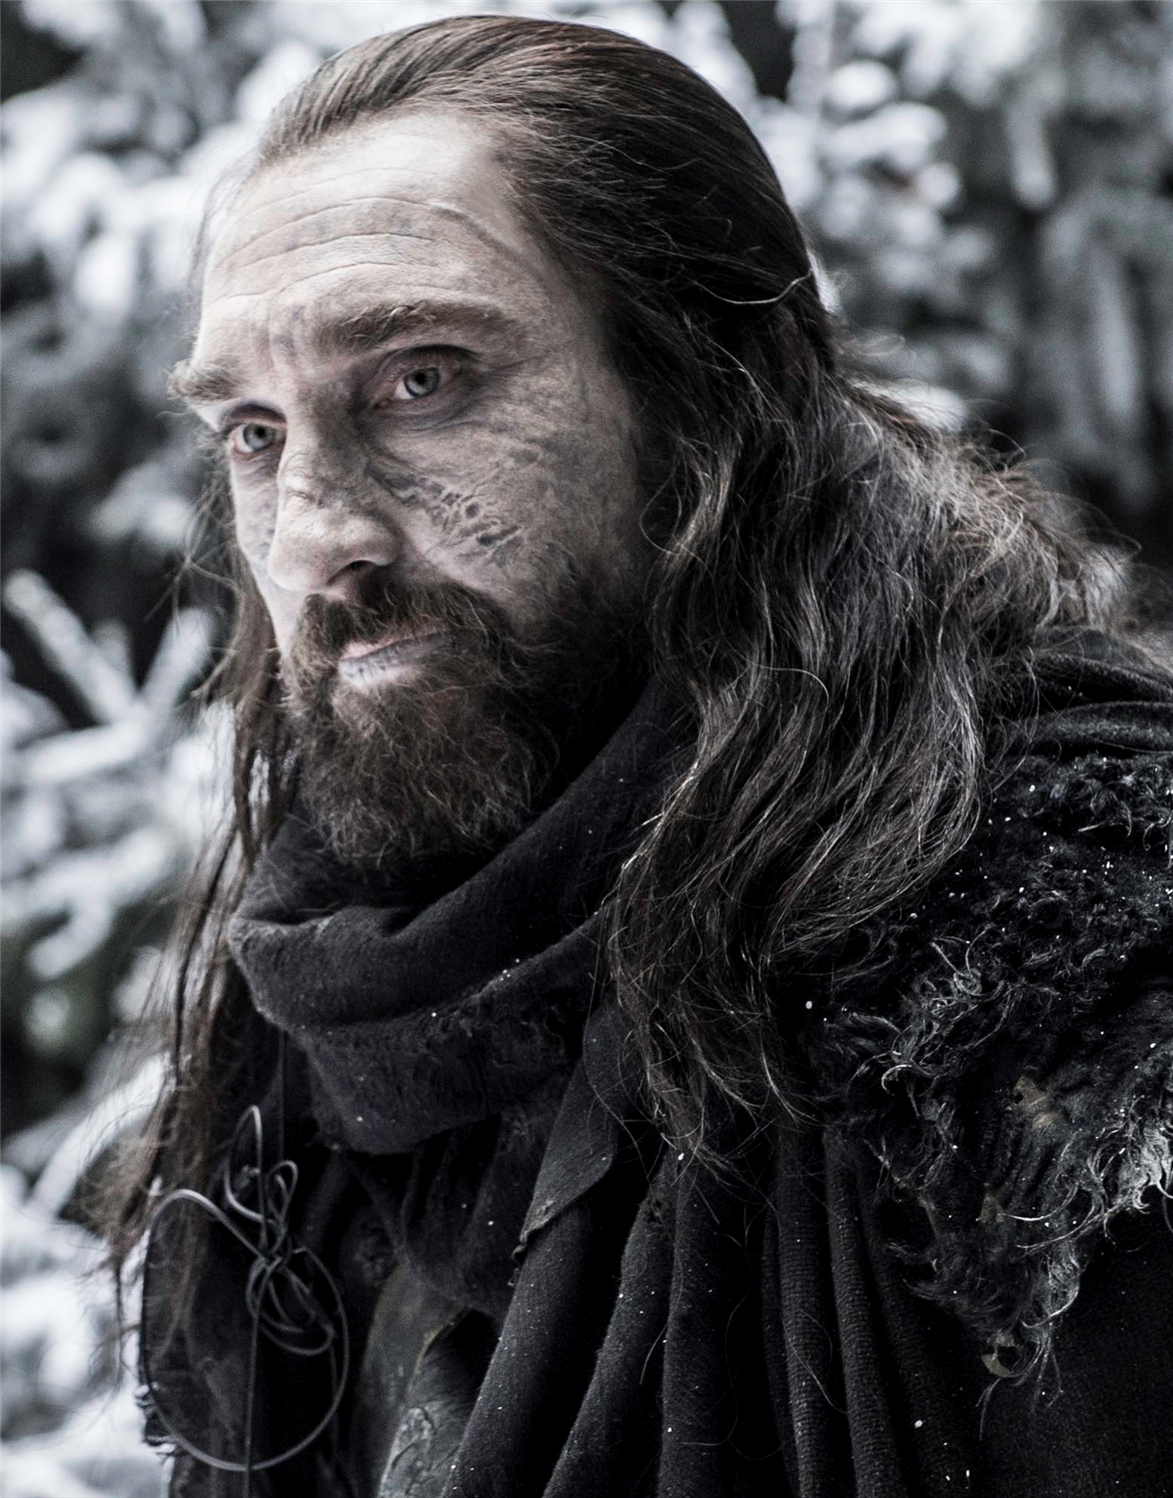 Se confirma que volverá personaje reaparecido en temporada 6 de "Game of Thrones"